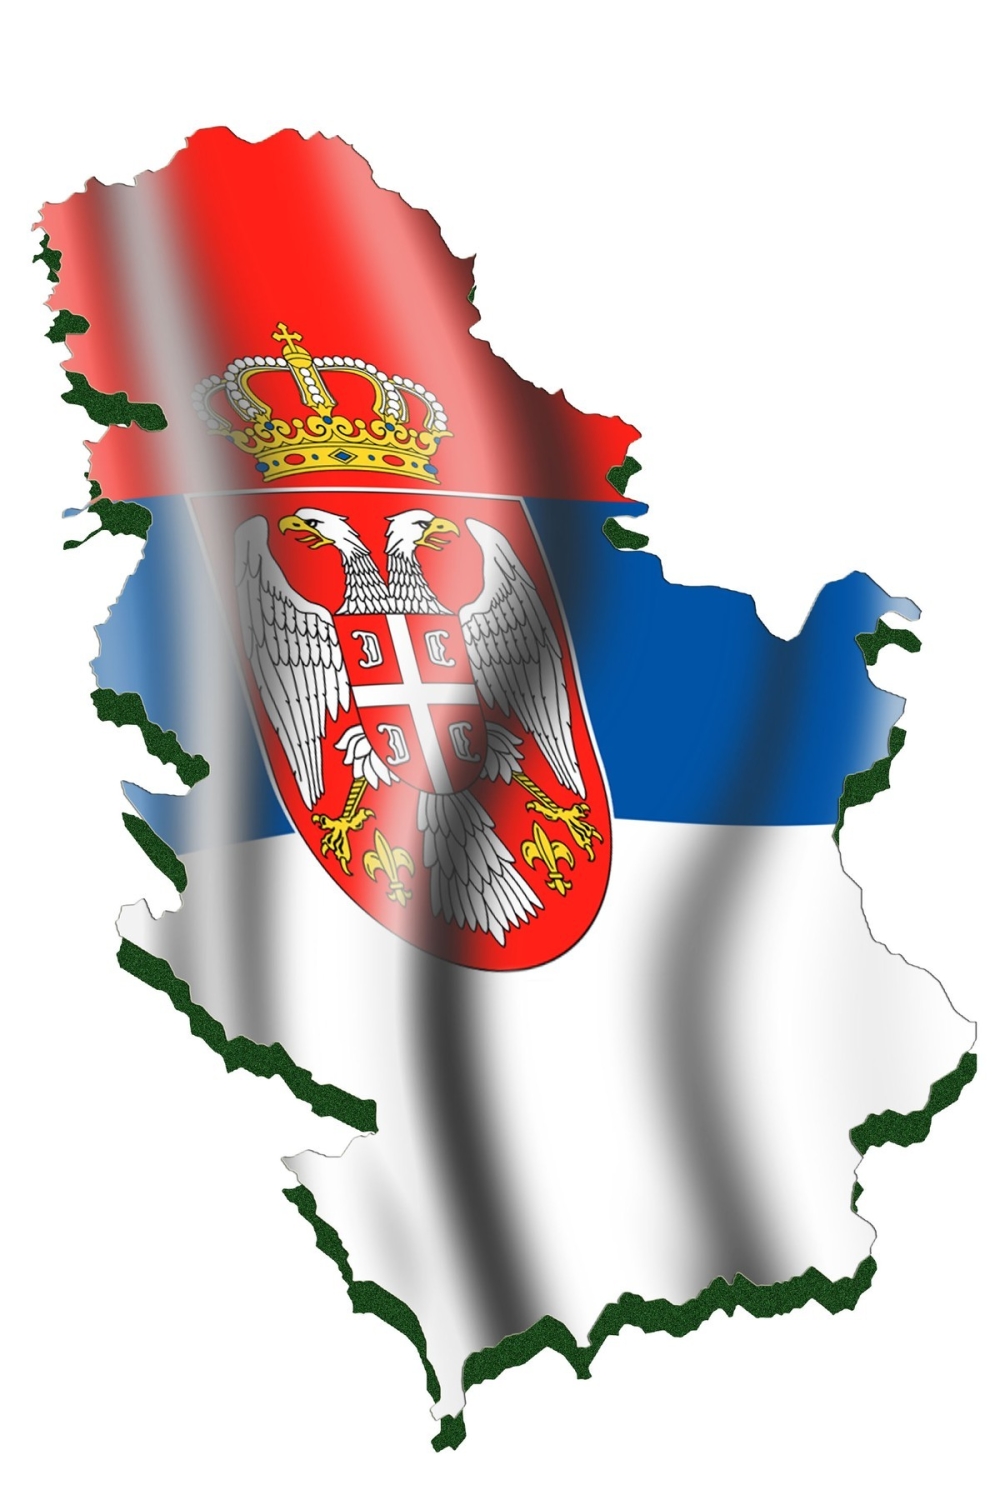 granice srbije karta Granice Srbije su bezbedne   alo.rs granice srbije karta